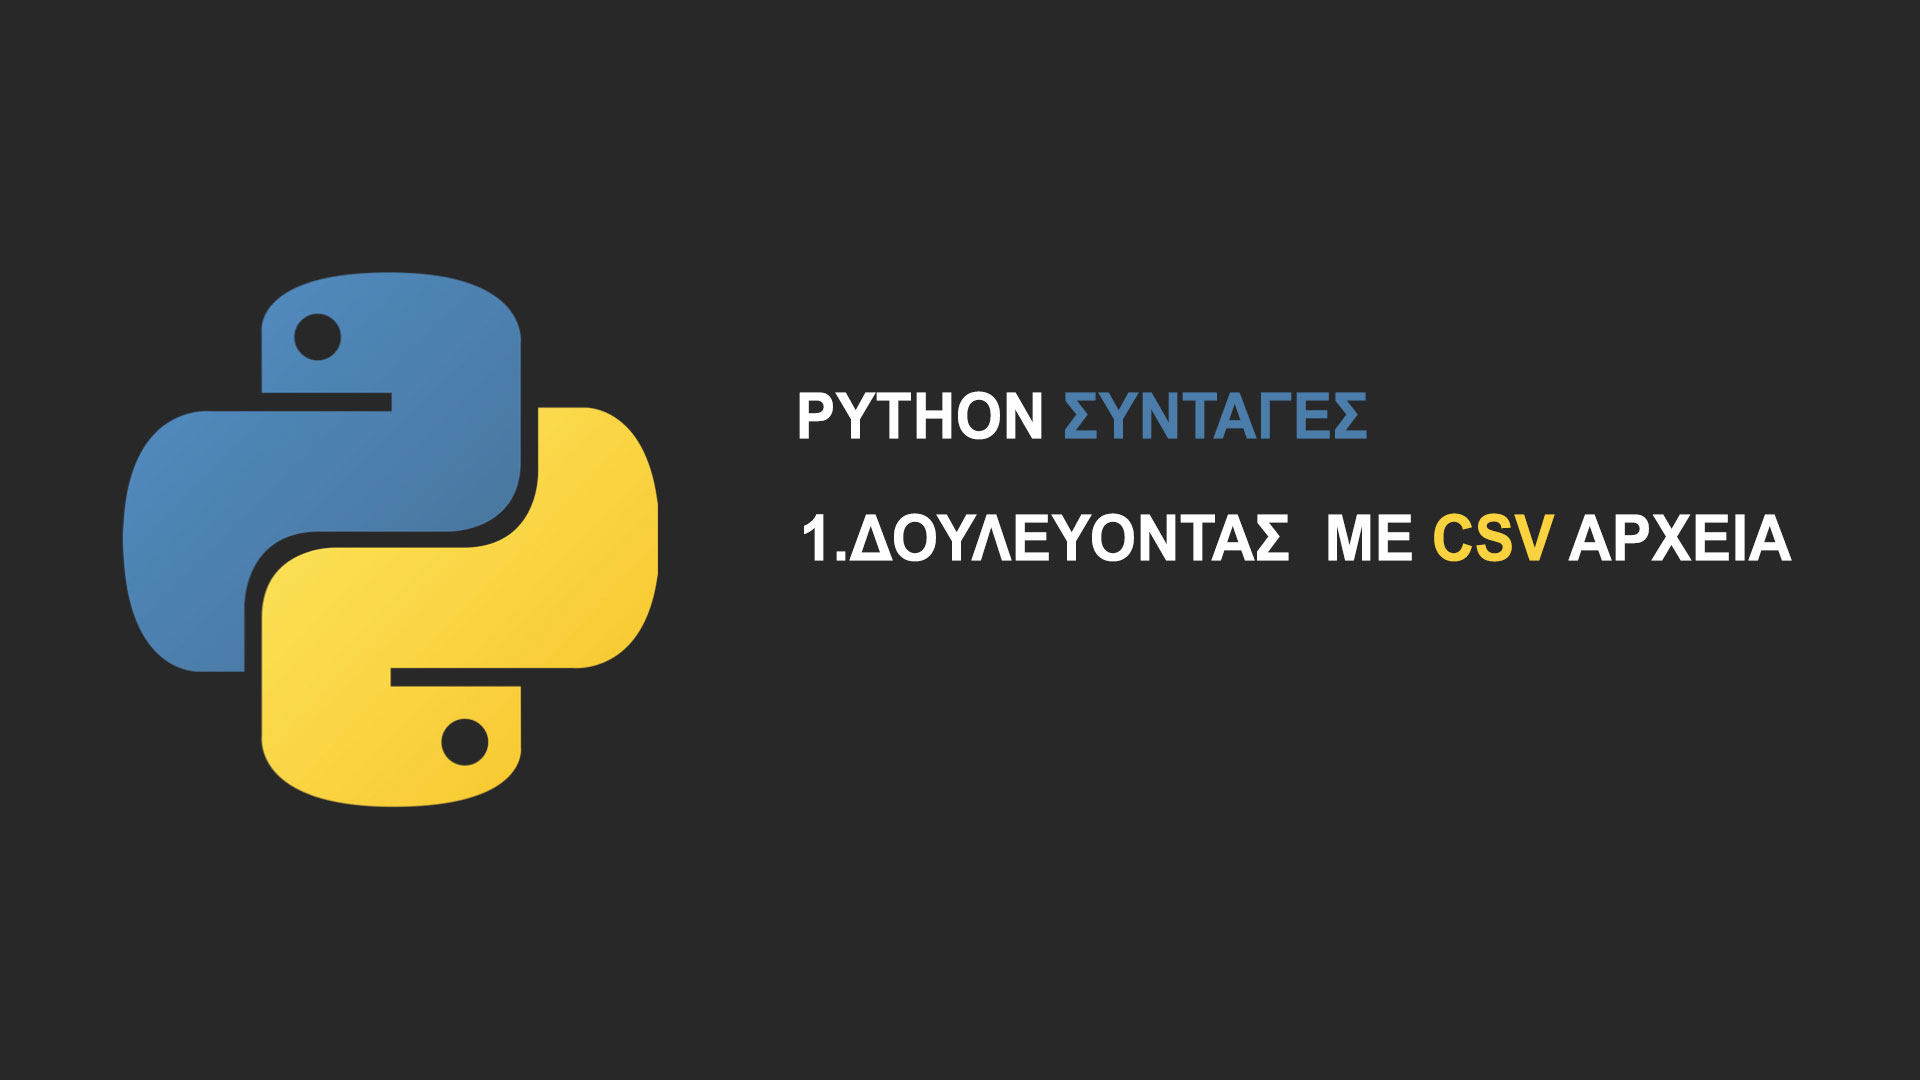 Пиксель питон. Питон язык программирования Эстетика. SQL Python. Обои питон язык программирования. Питон логотип.